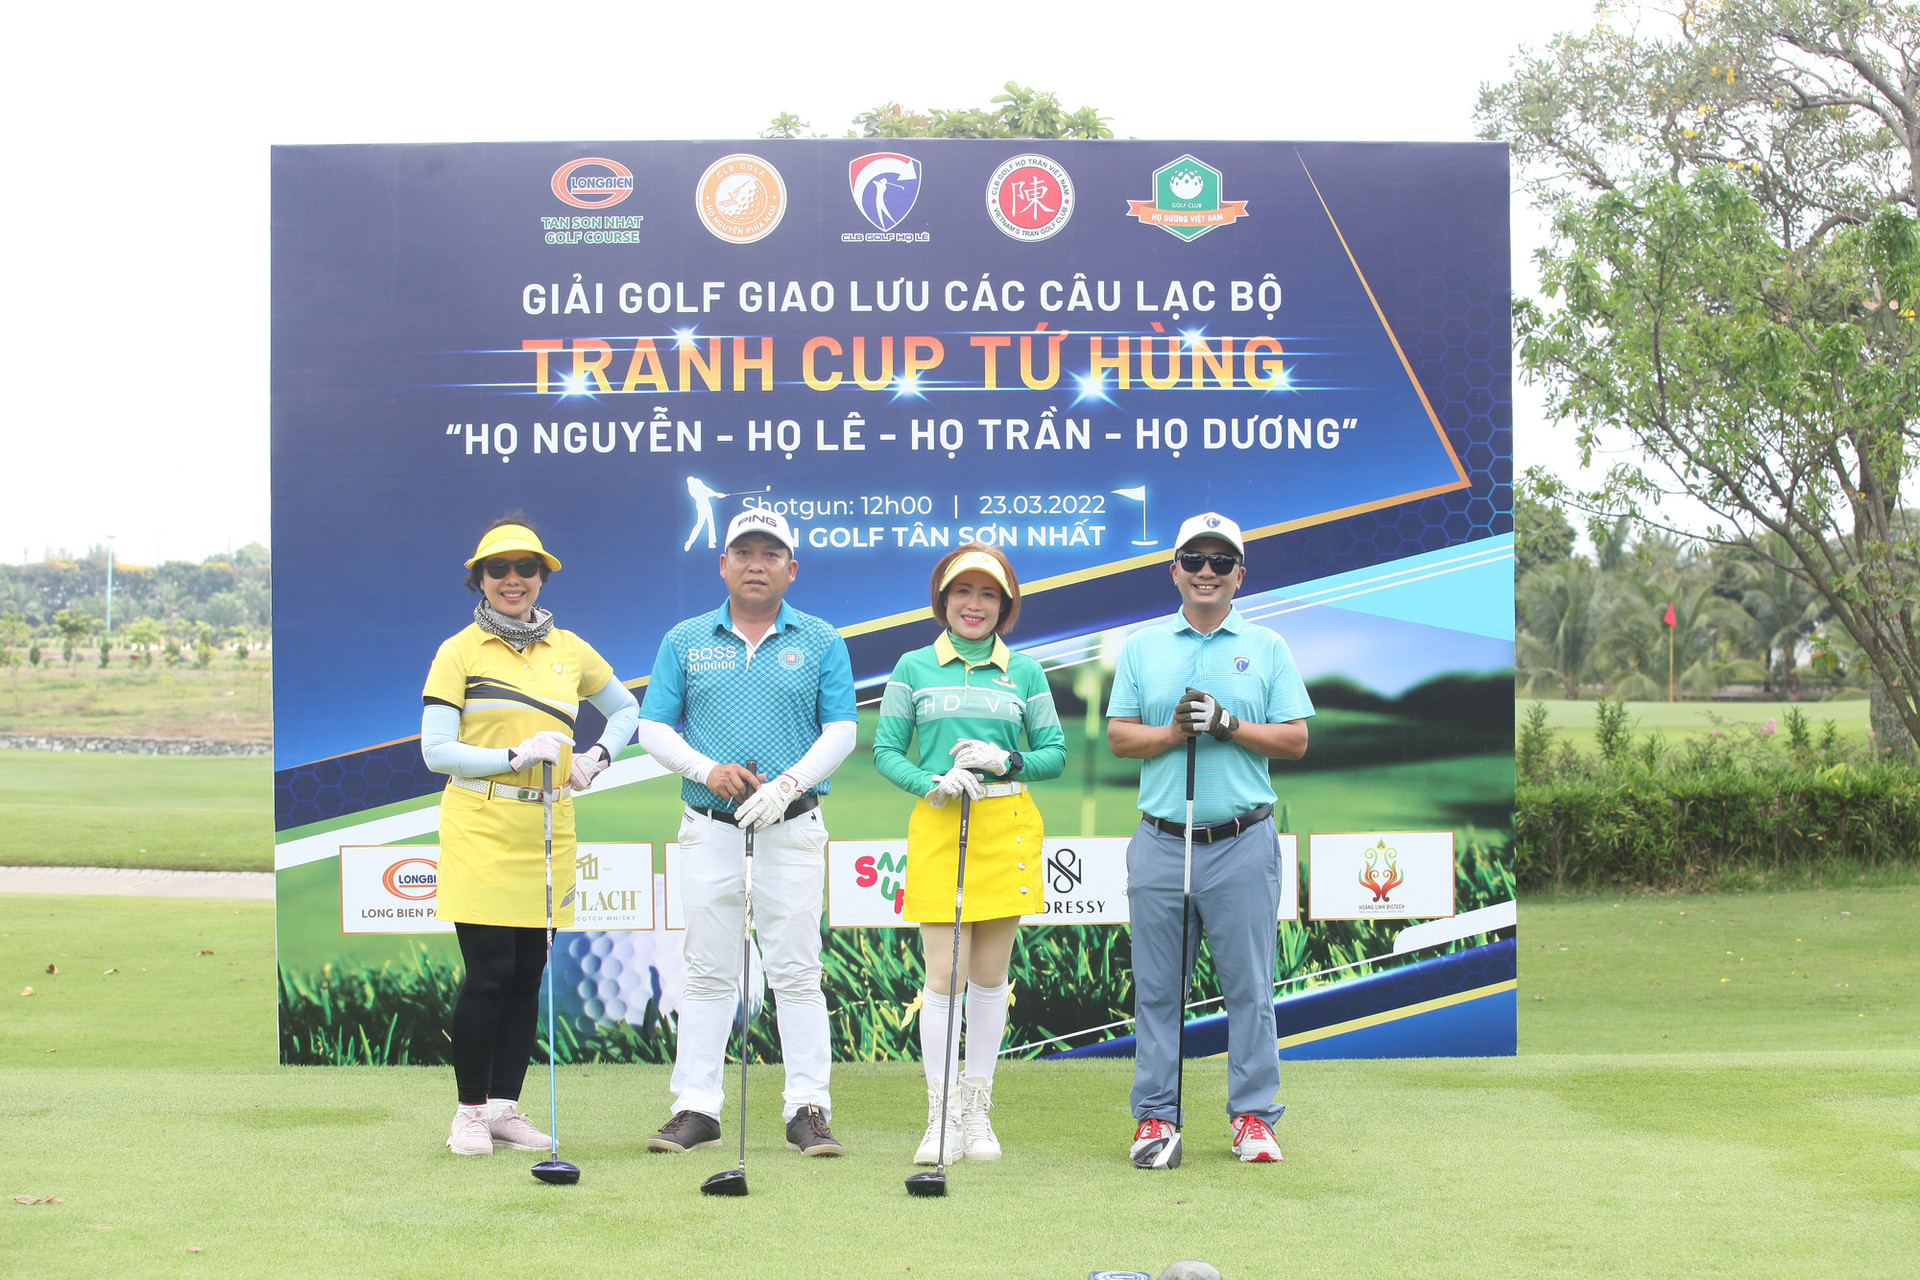 Đội tuyển Golf Họ Dương giành cúp tại “Giải Golf tranh cúp Tứ Hùng Nguyễn – Lê - Trần - Dương” - Ảnh 4.